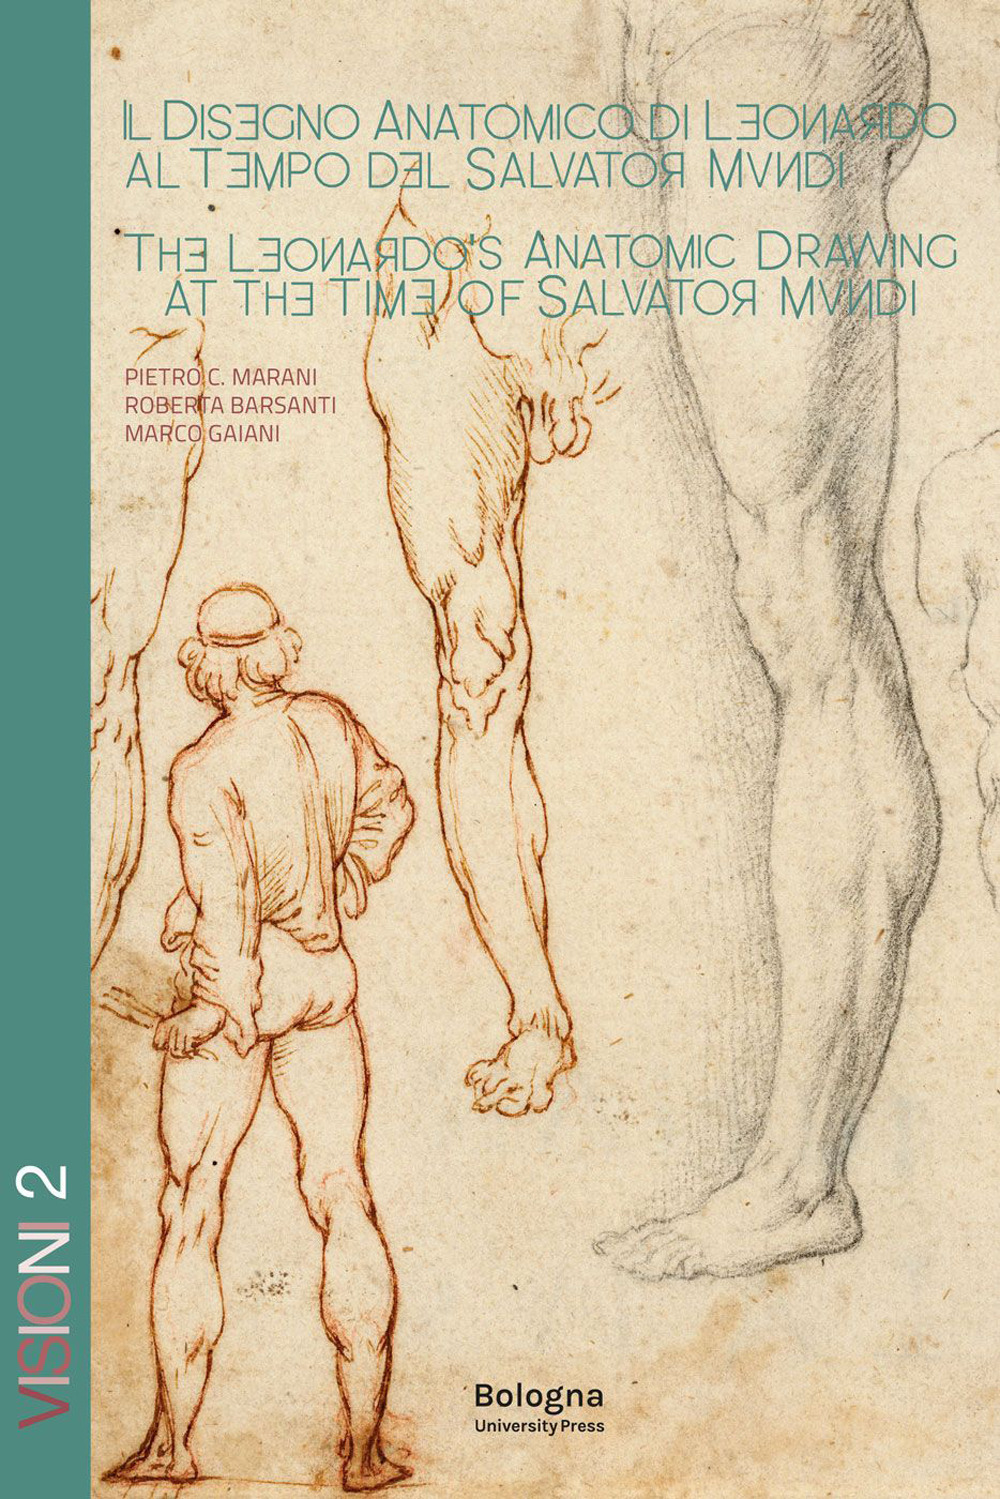 Il disegno anatomico di Leonardo al tempo del Salvator Mundi-The Leonardo's anatomic drawing at the time of Salvator Mundi